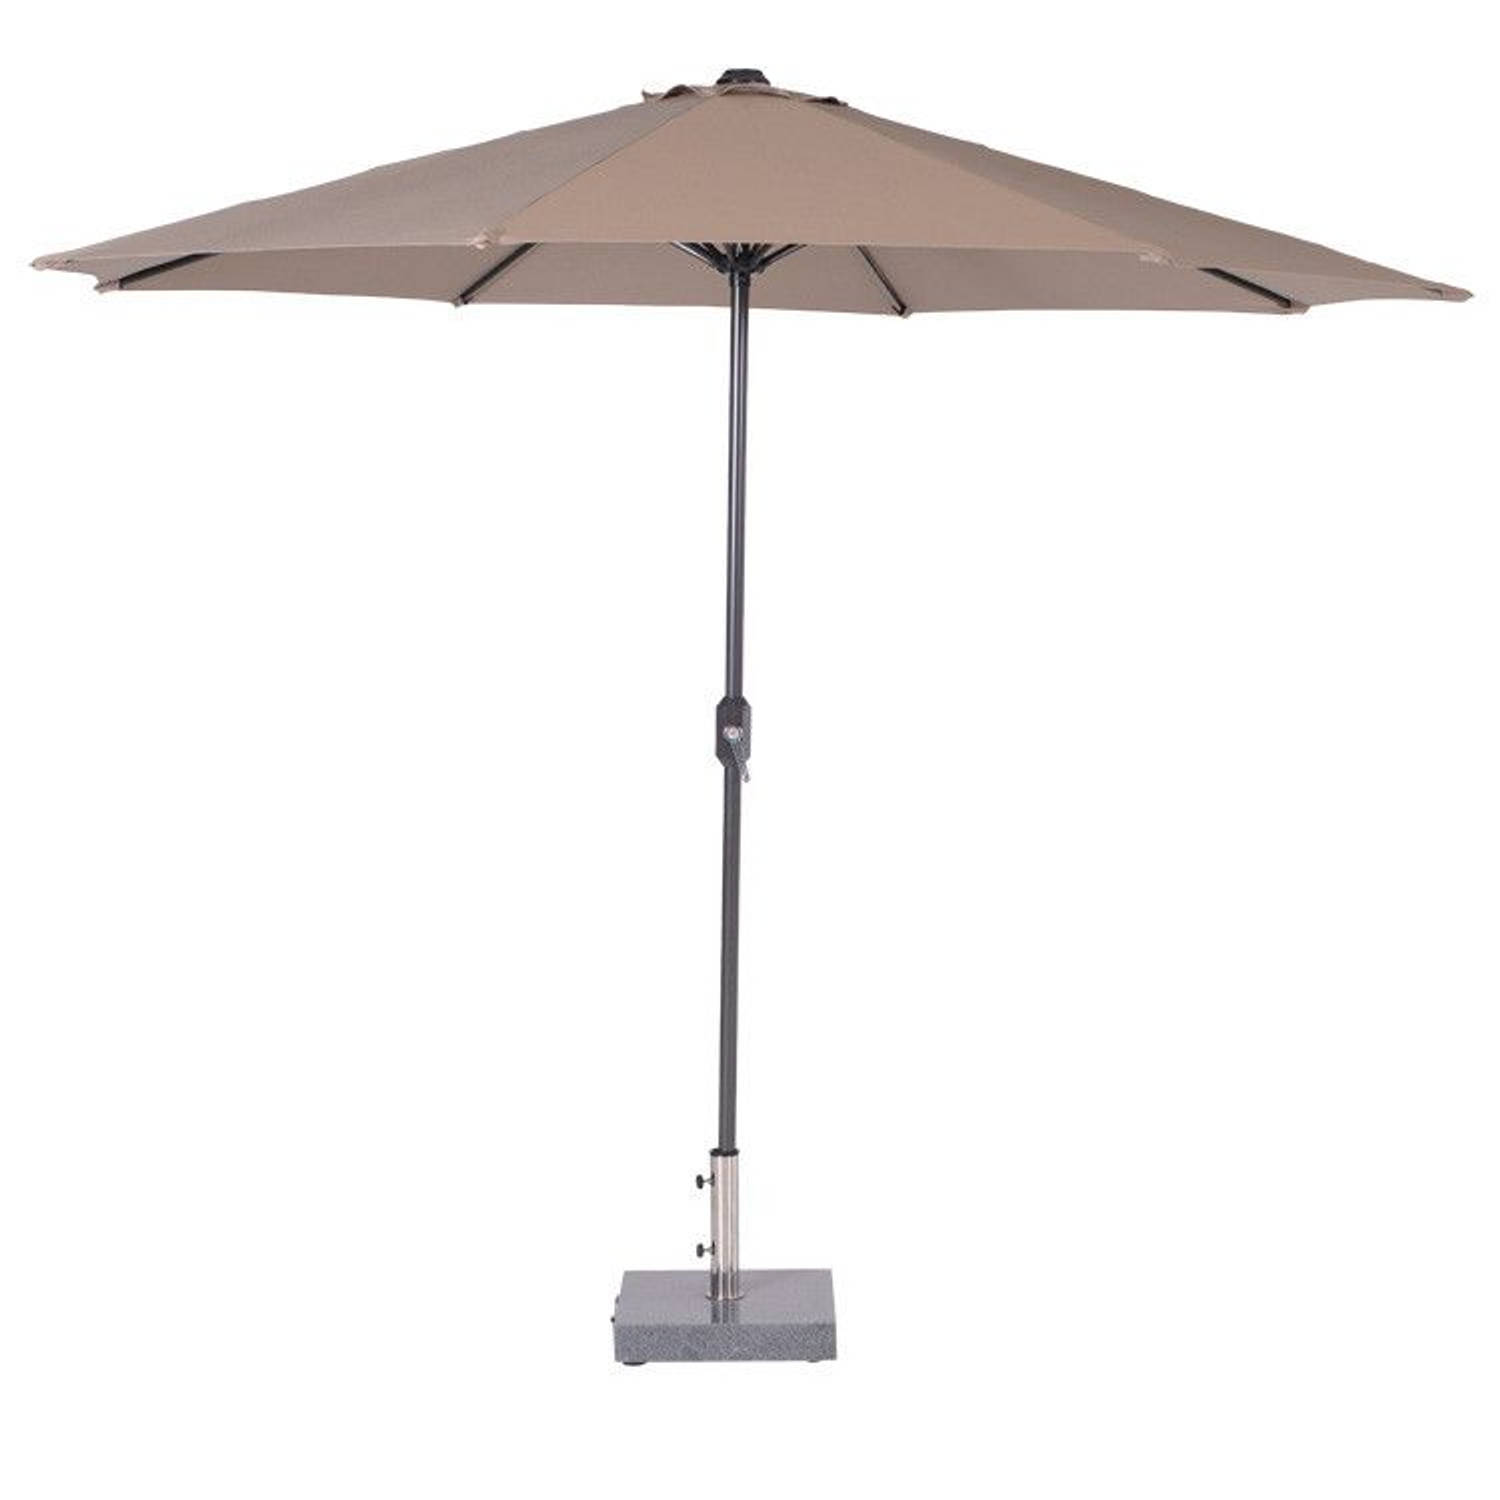 Lotus parasol Ã˜300 royal grey-taupe